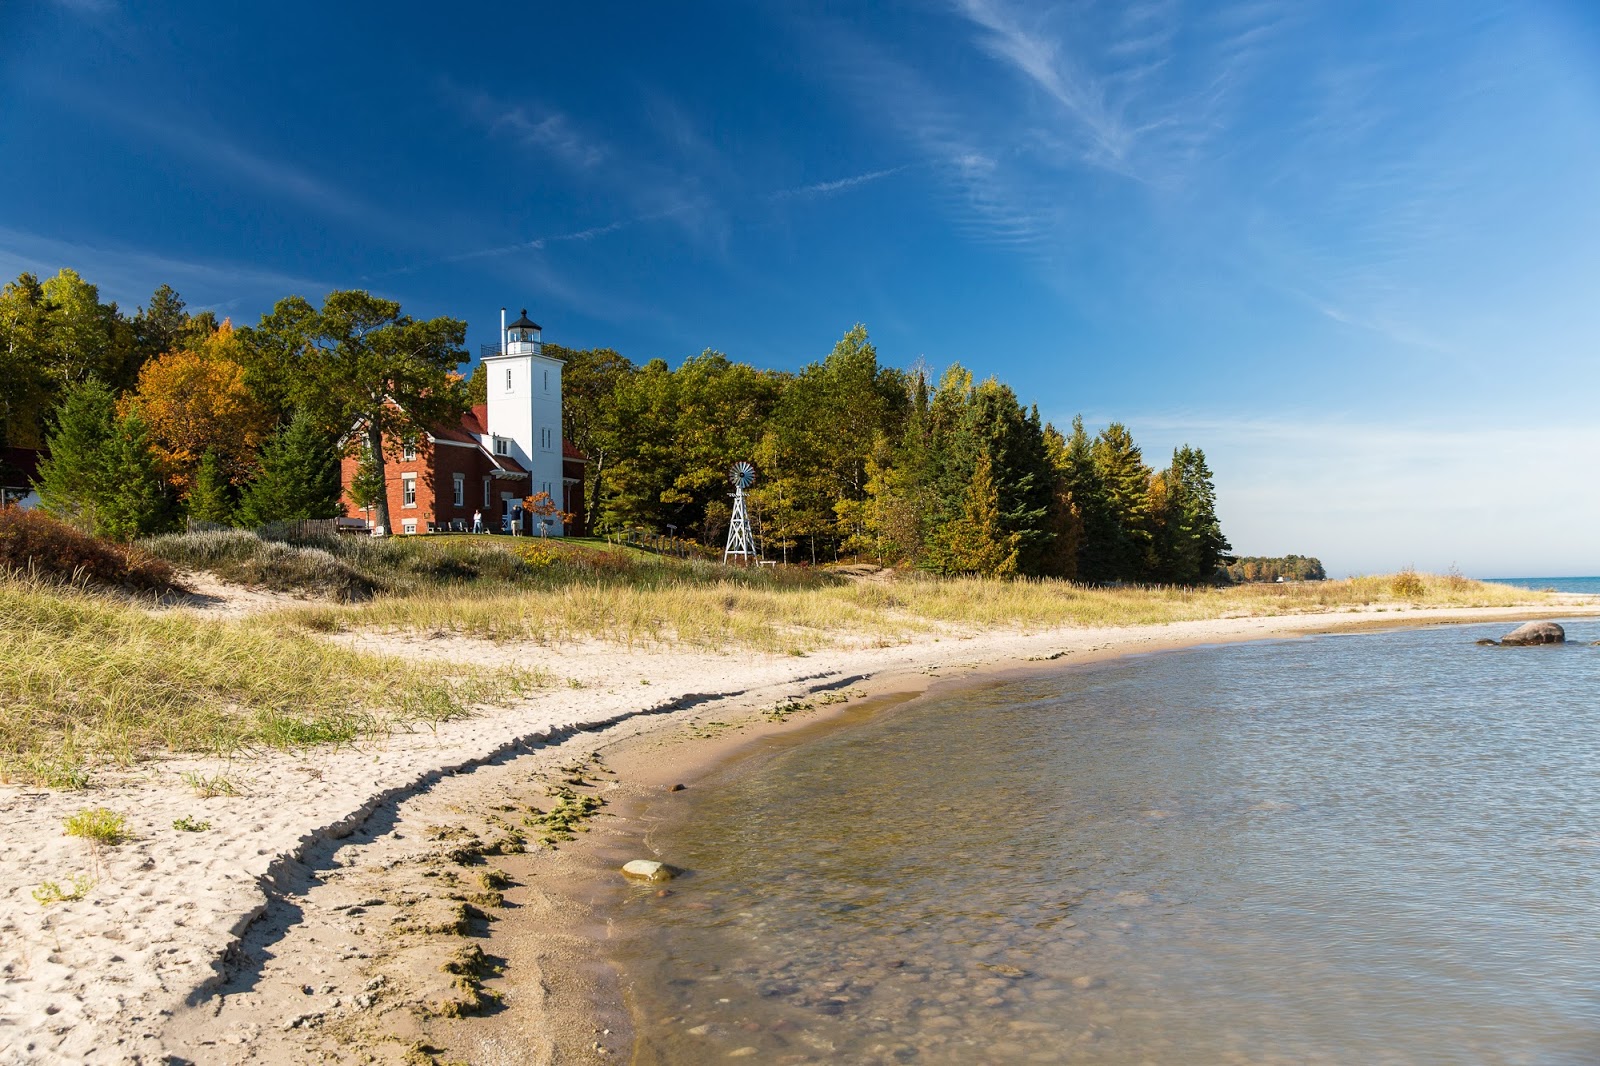 Zdjęcie 40 Mile Point Lighthouse z powierzchnią jasny piasek